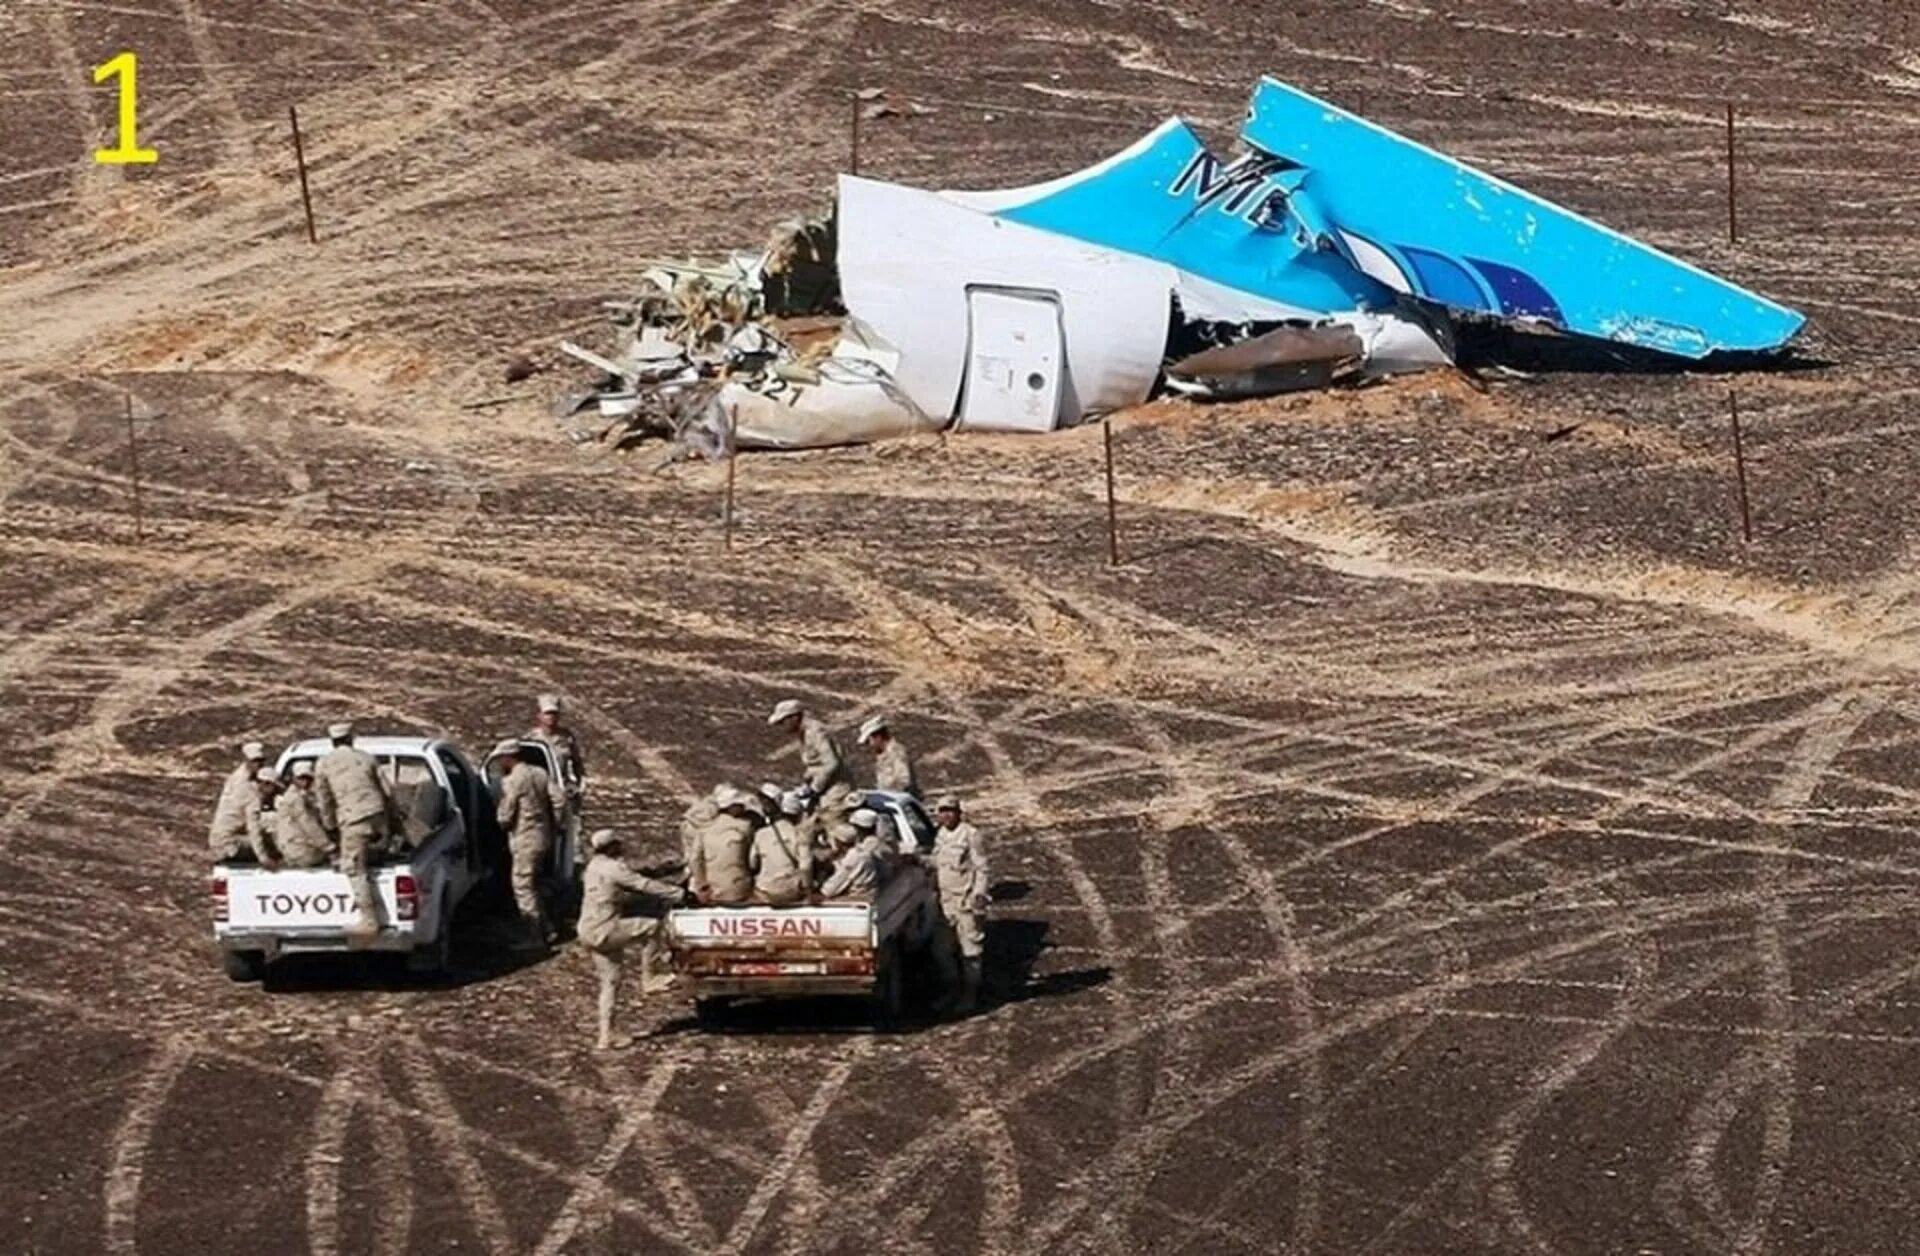 Катастрофа a321 над Синайским полуостровом. Самолет a321 "Когалымавиа". Над Синаем крушение а321 Египет. Катастрофа a321 над Синайским полуостровом (2015). Октябрь 2015 года авиакатастрофа